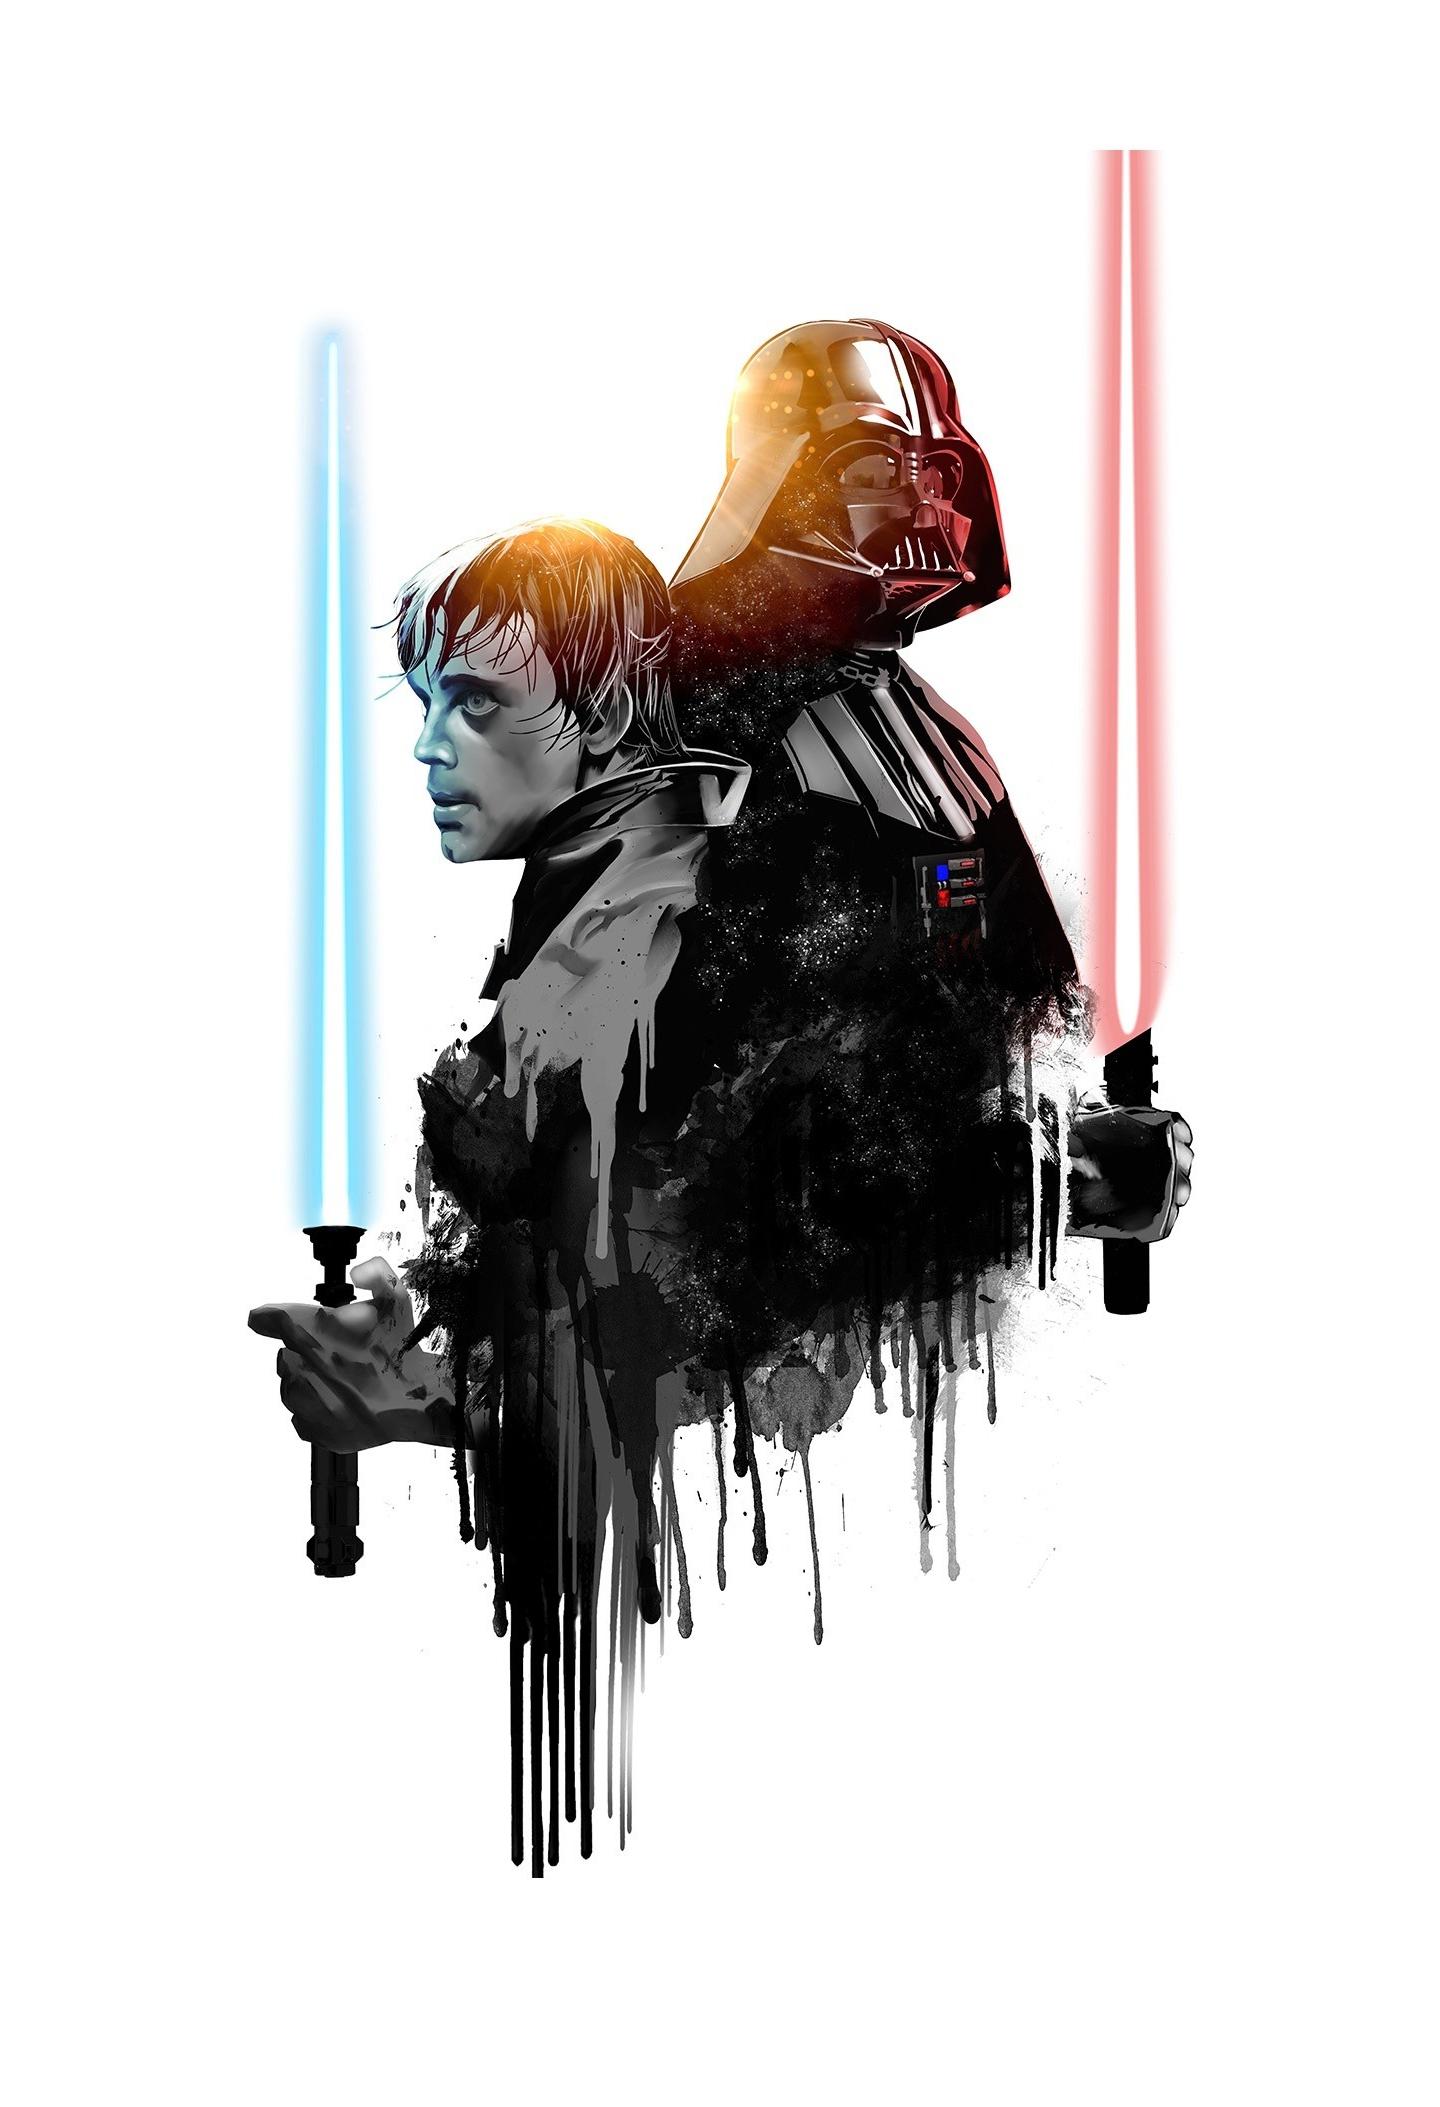 Wallpaper Darth Vader Luke Skywalker Star